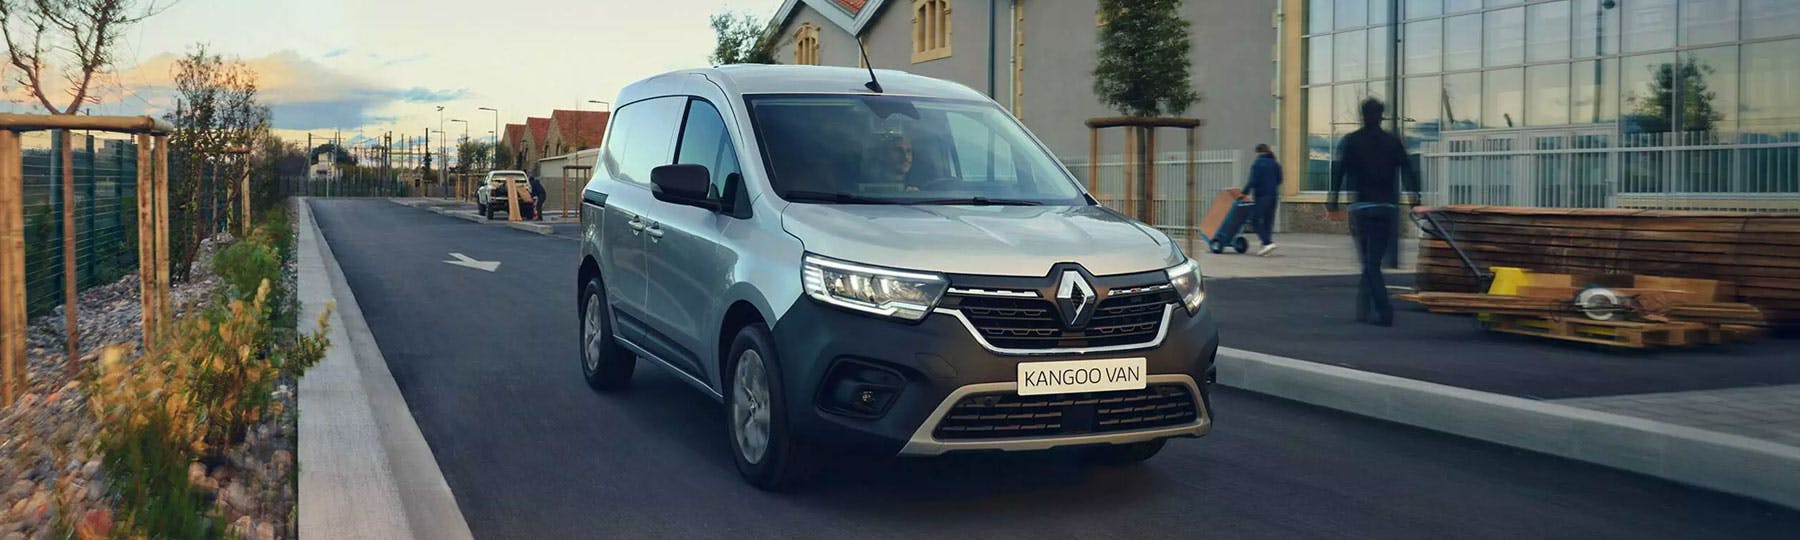 All New Renault Kangoo